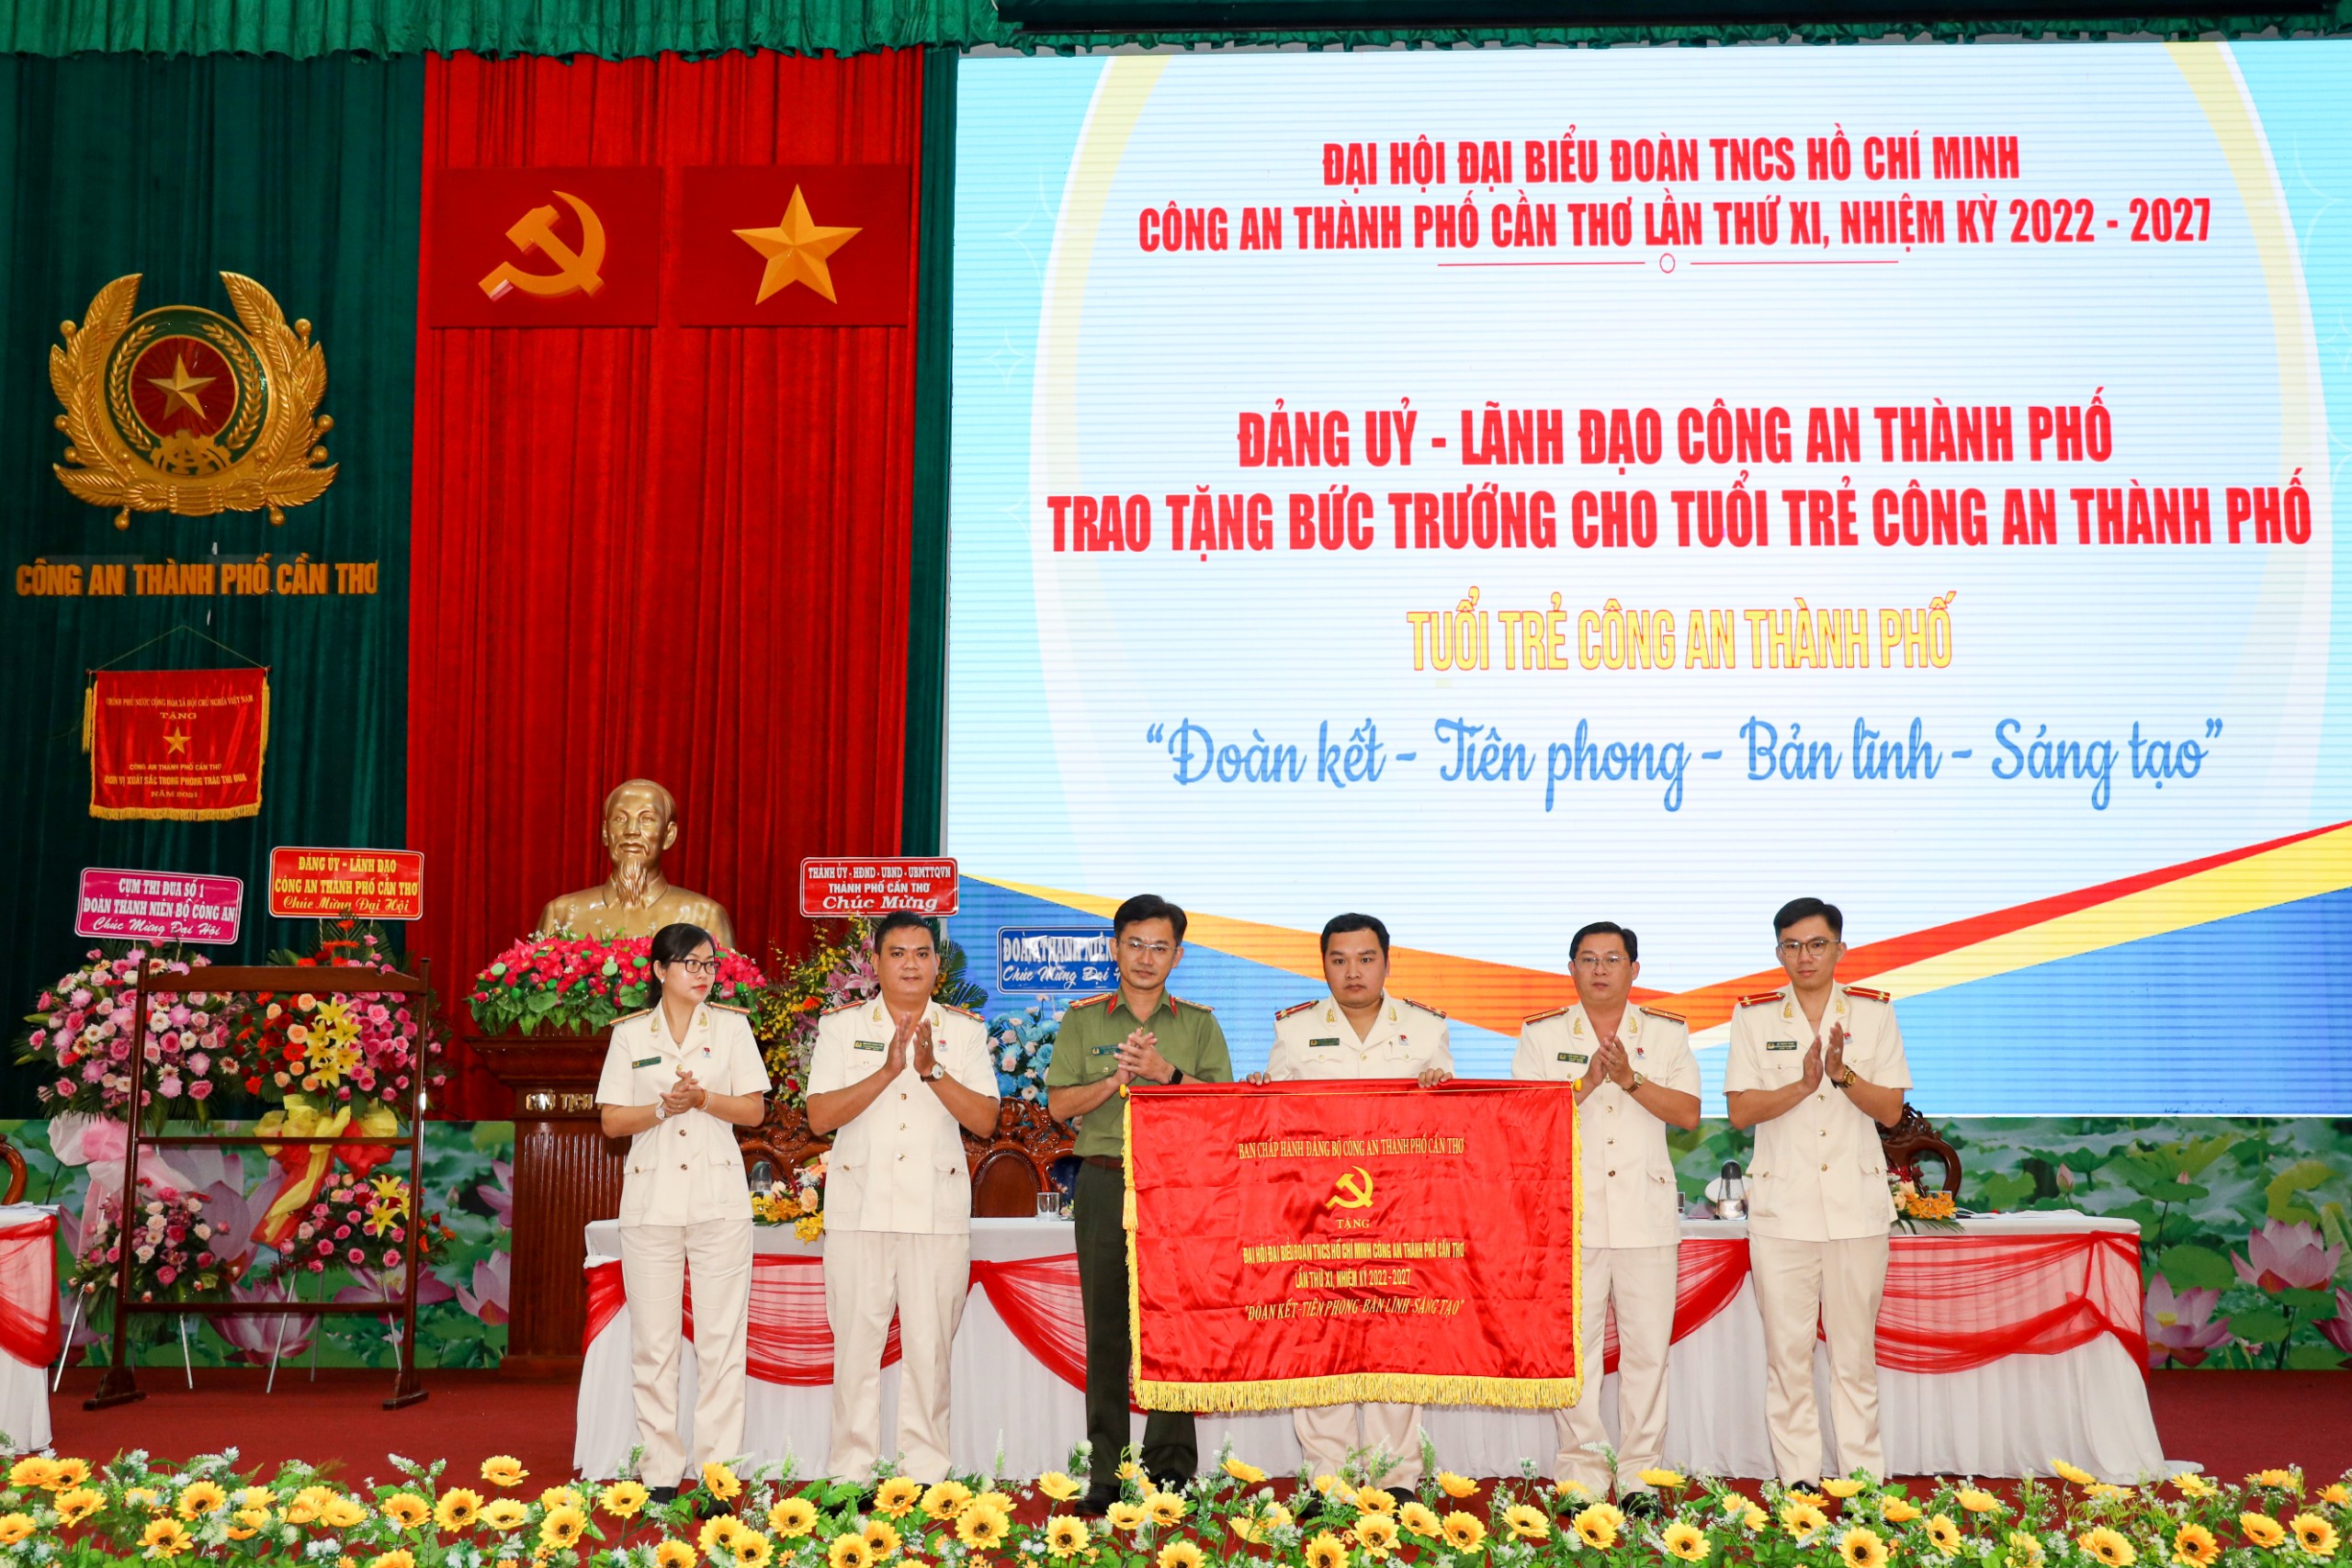 Thay mặt đảng ủy, lãnh đạo Công an thành phố, Đại tá Trần Văn Dương trao tặng bức trướng cho Đoàn Thanh niên Công an thành phố.